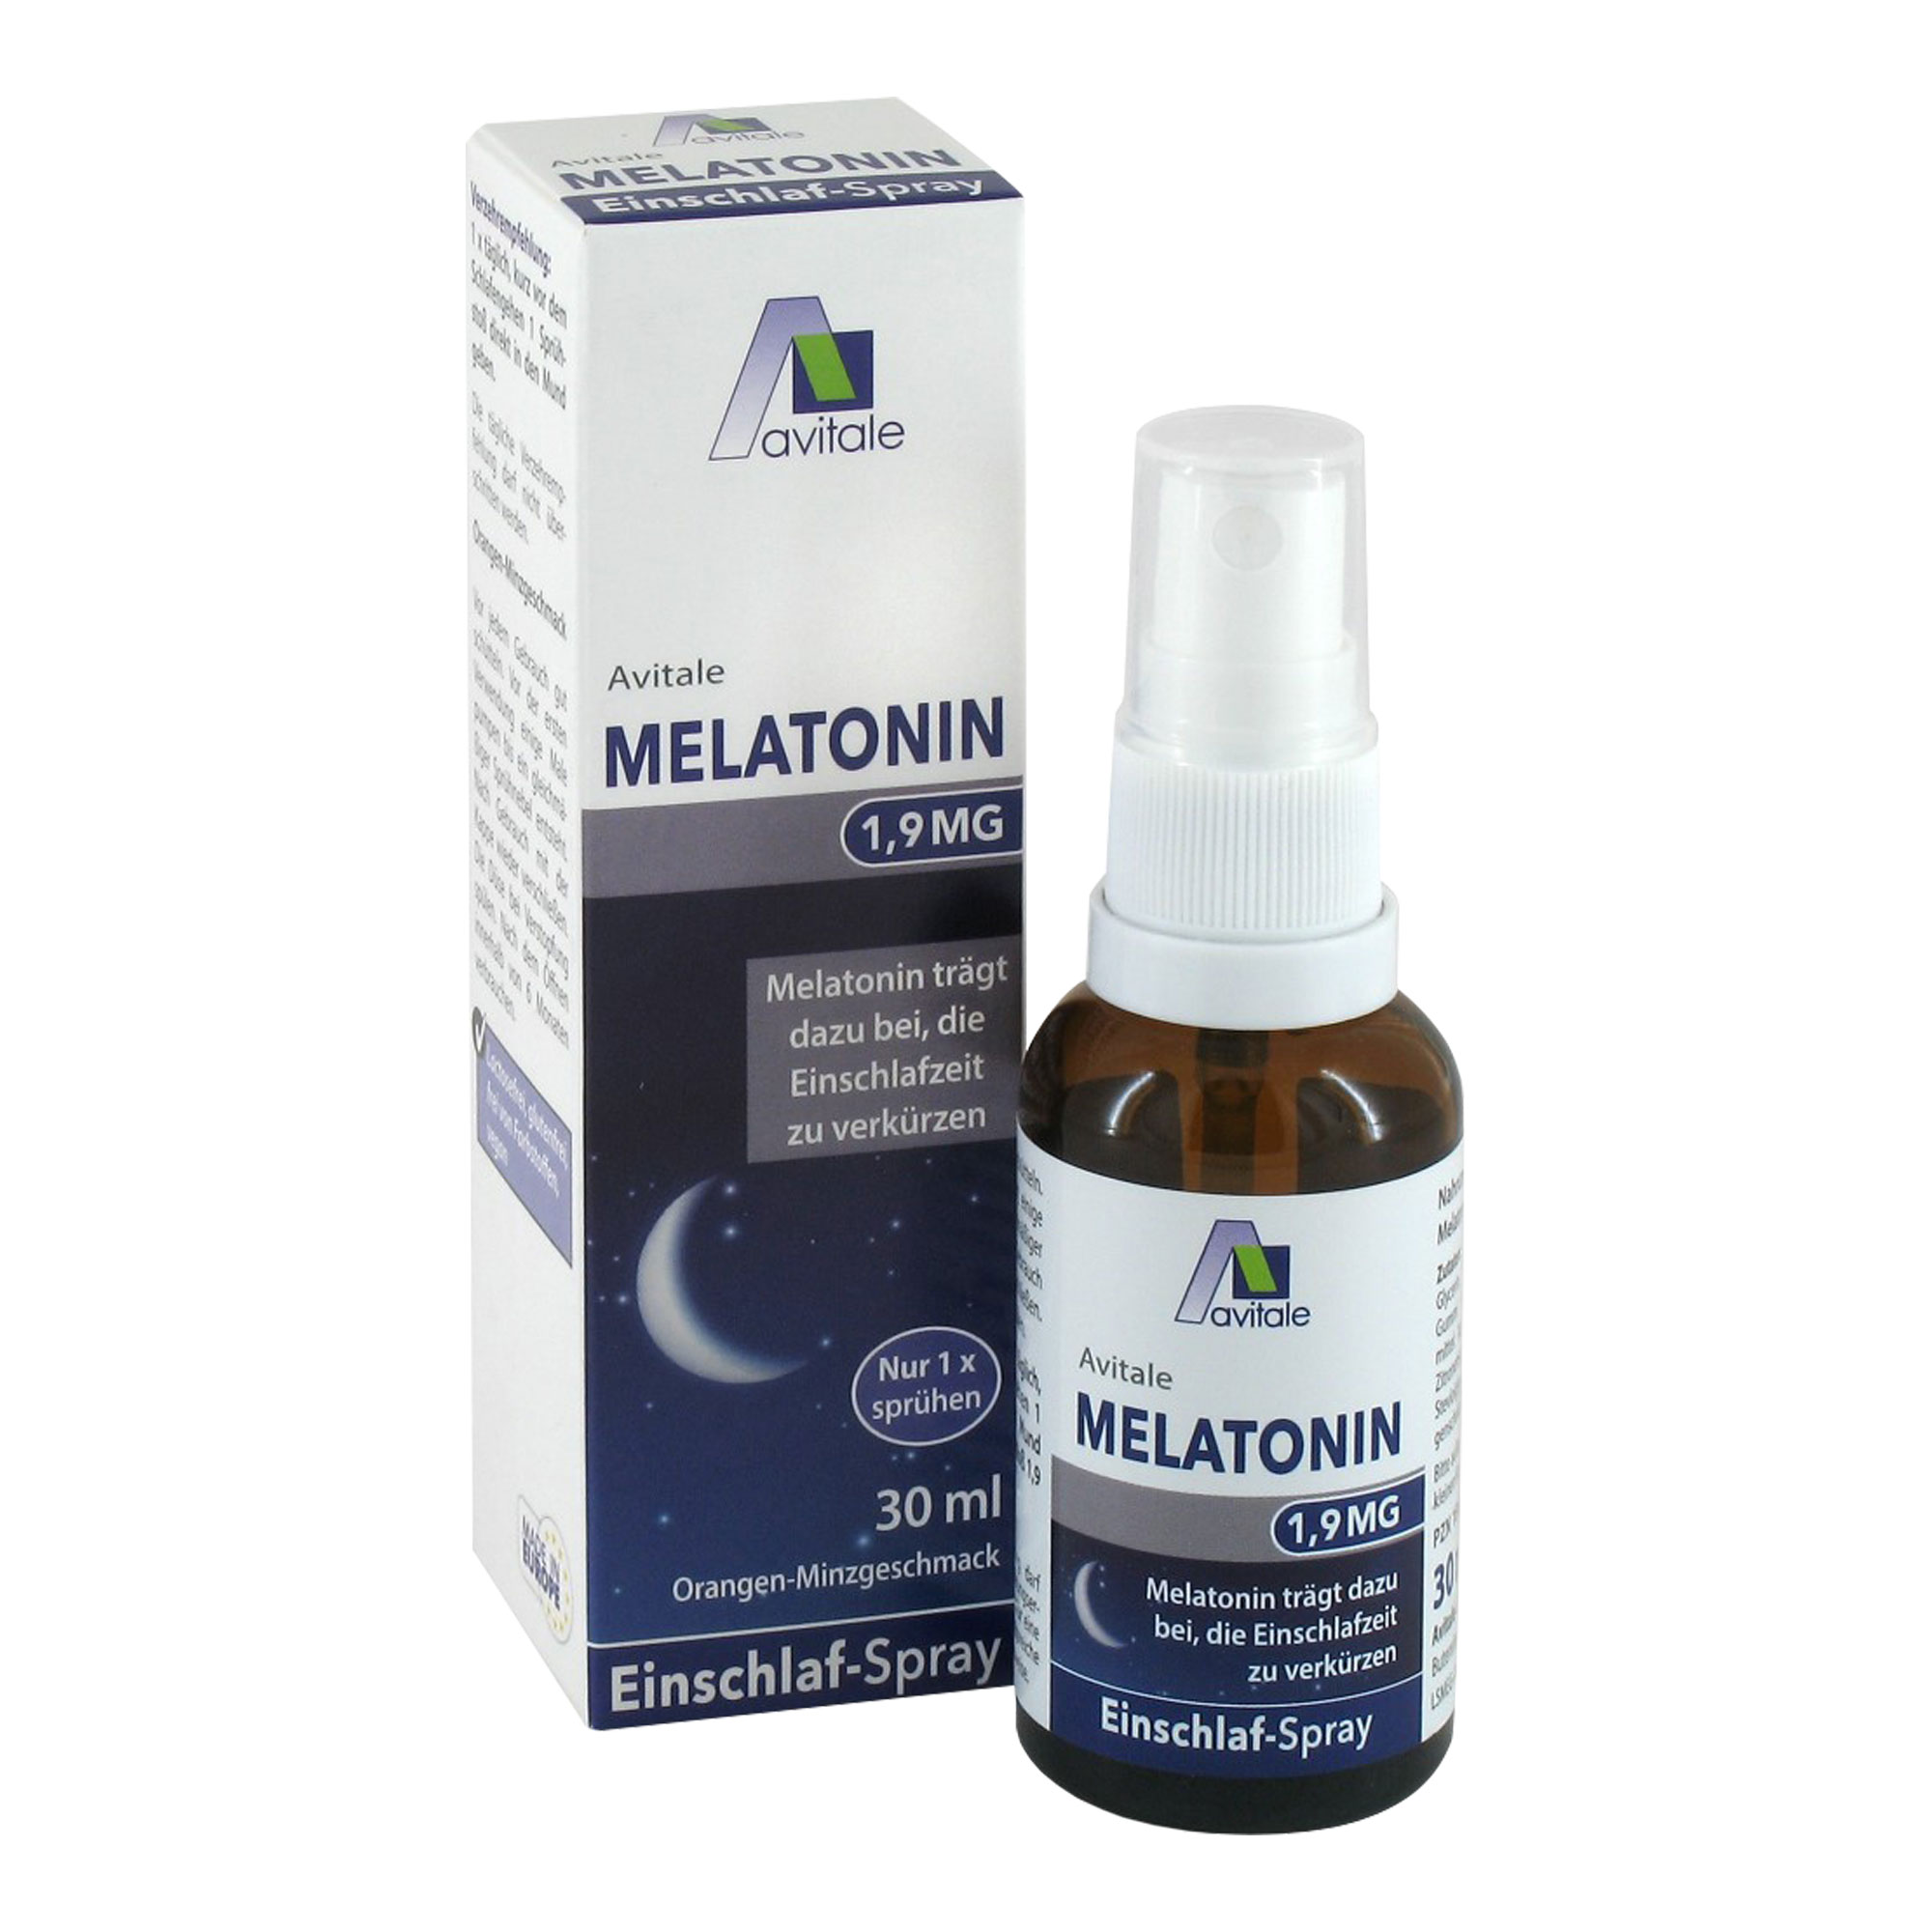 Nahrungsergänzungsmittel mit 1,9 mg Melatonin pro Sprühstoß. Einschlafspray mit feinem Orangen-Minzgeschmack.